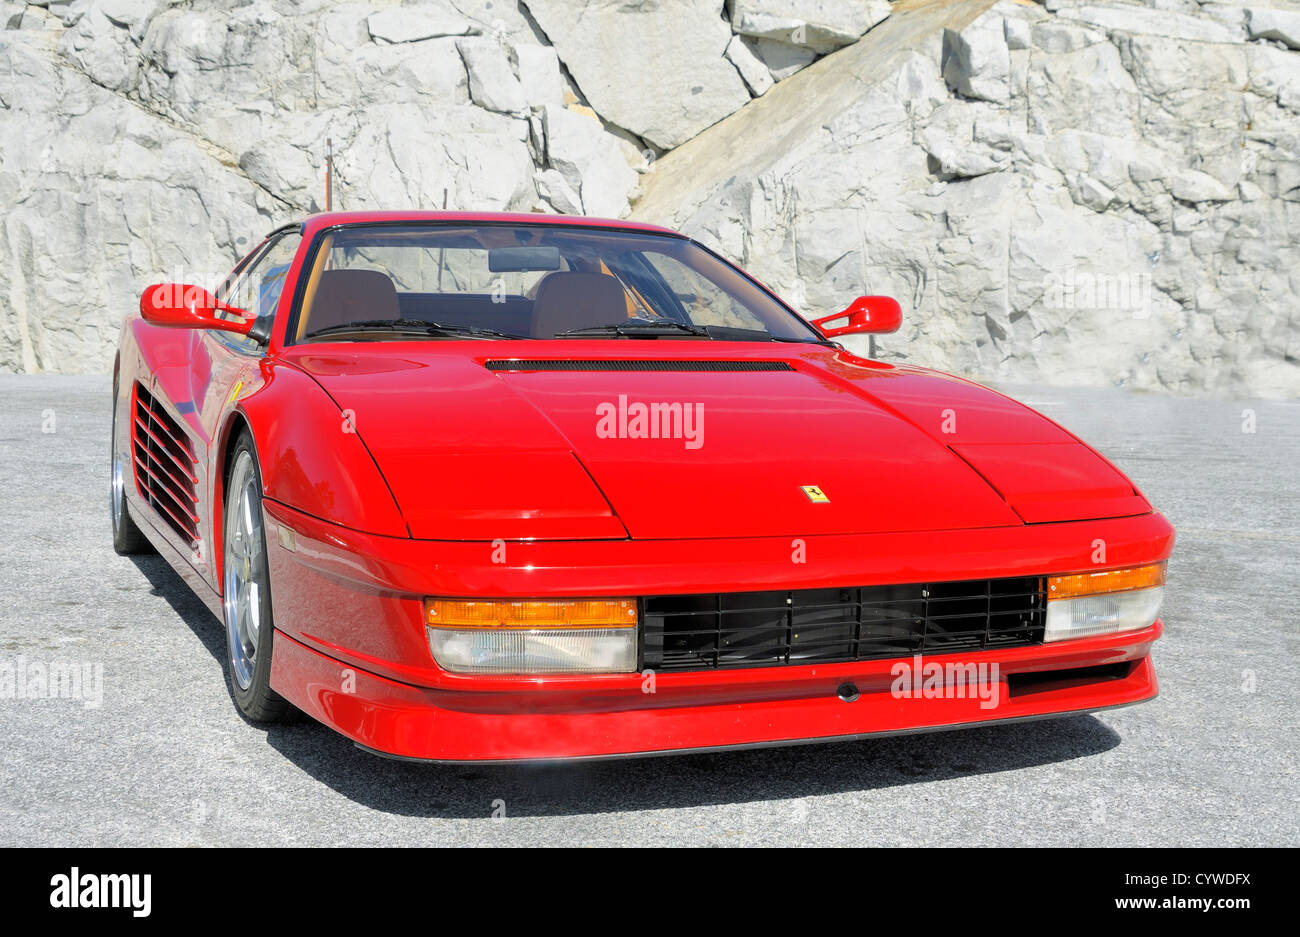 Ein roter Ferrari Testarossa, ein 12-Zylinder-Mittelmotor-Sportwagen. Ursprünglich 1984 produziert, wurden zehntausend Stück verkauft. Stockfoto